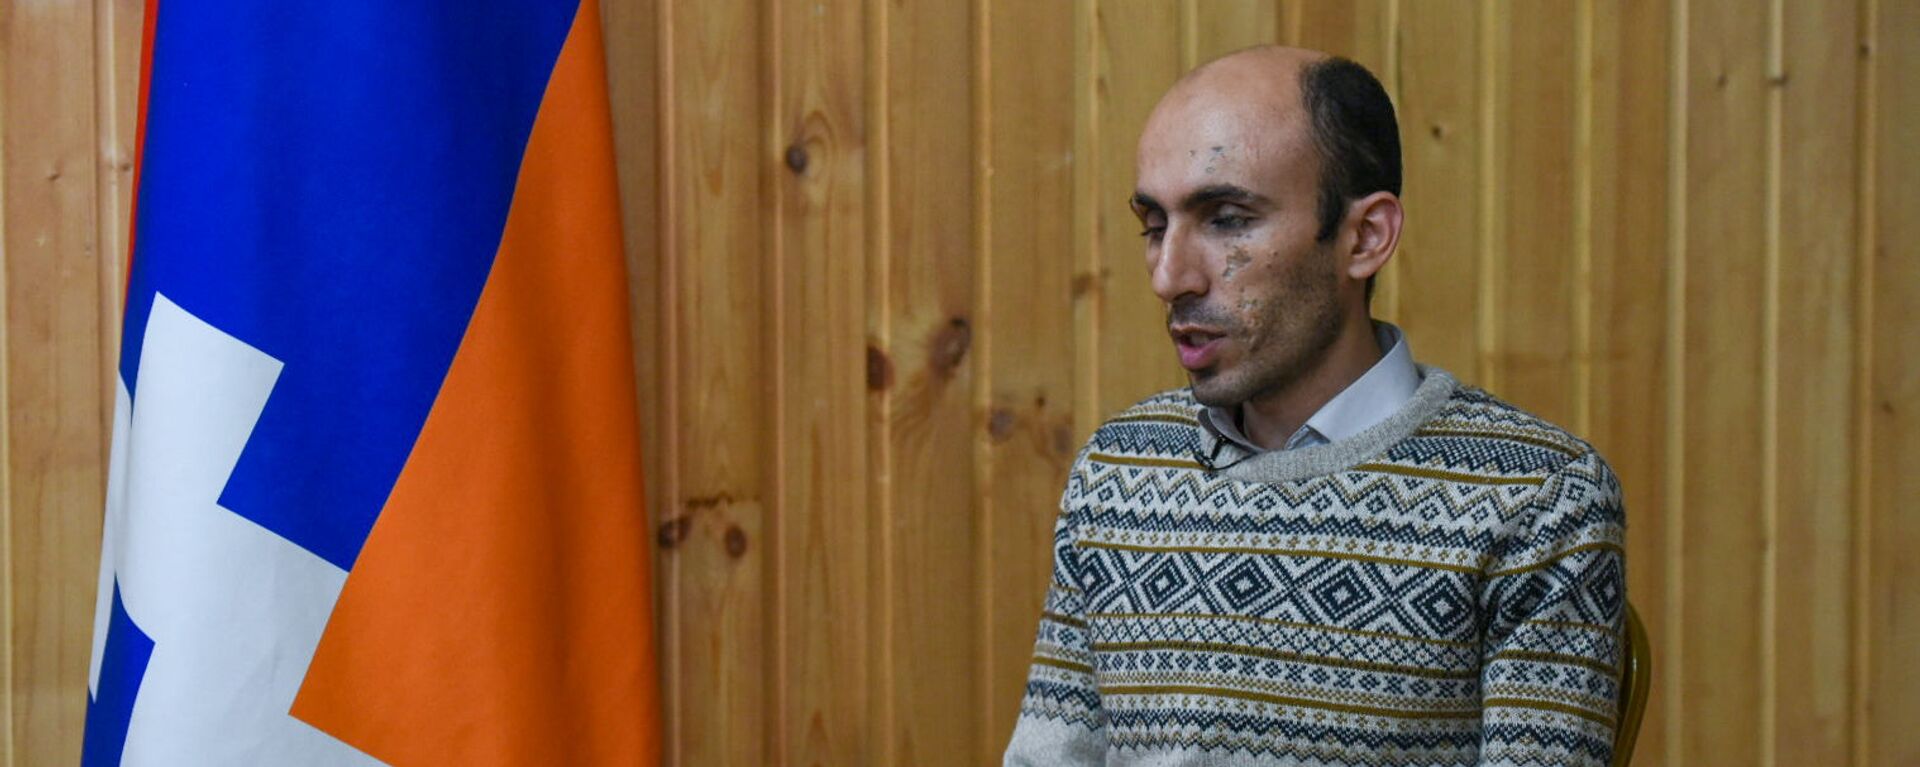 Защитник прав человека Карабаха Артак Бегларян - Sputnik Արմենիա, 1920, 26.07.2021